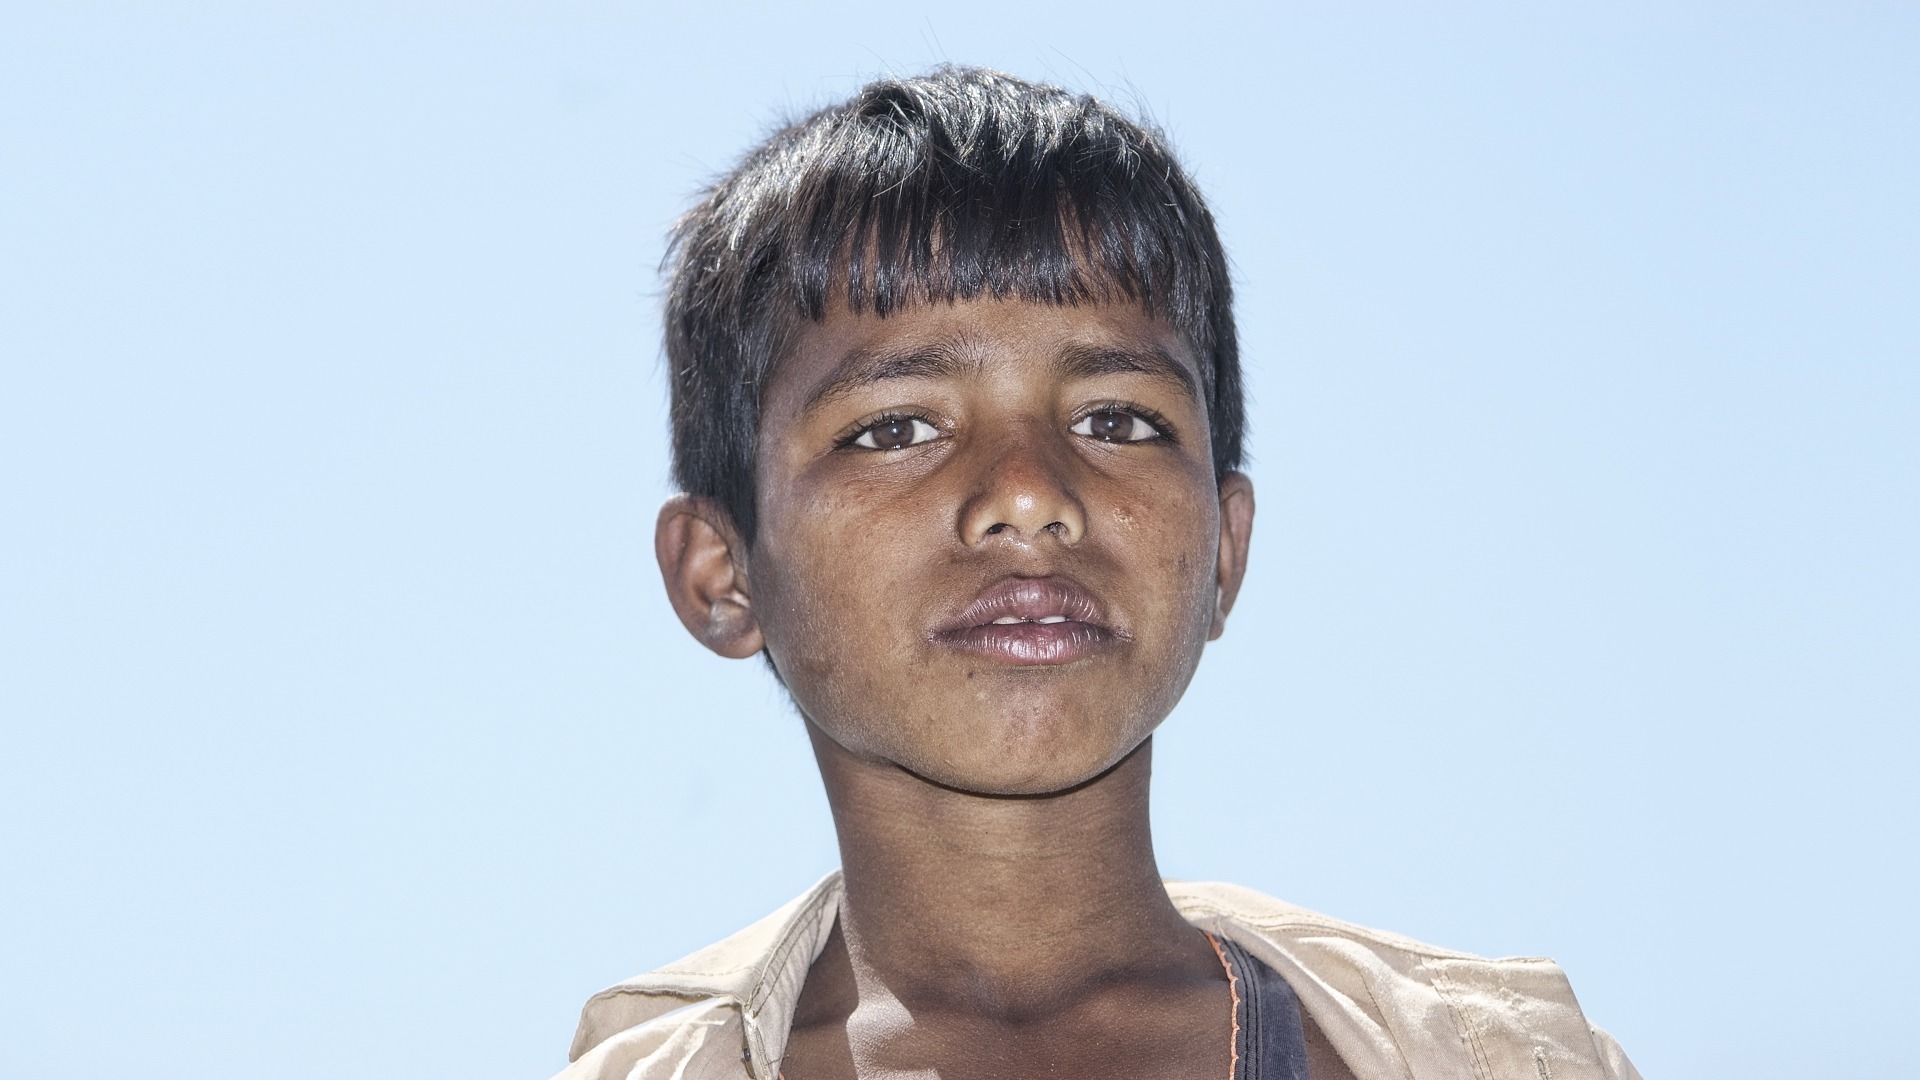 Blend Werk s "the people of Bangladesh"